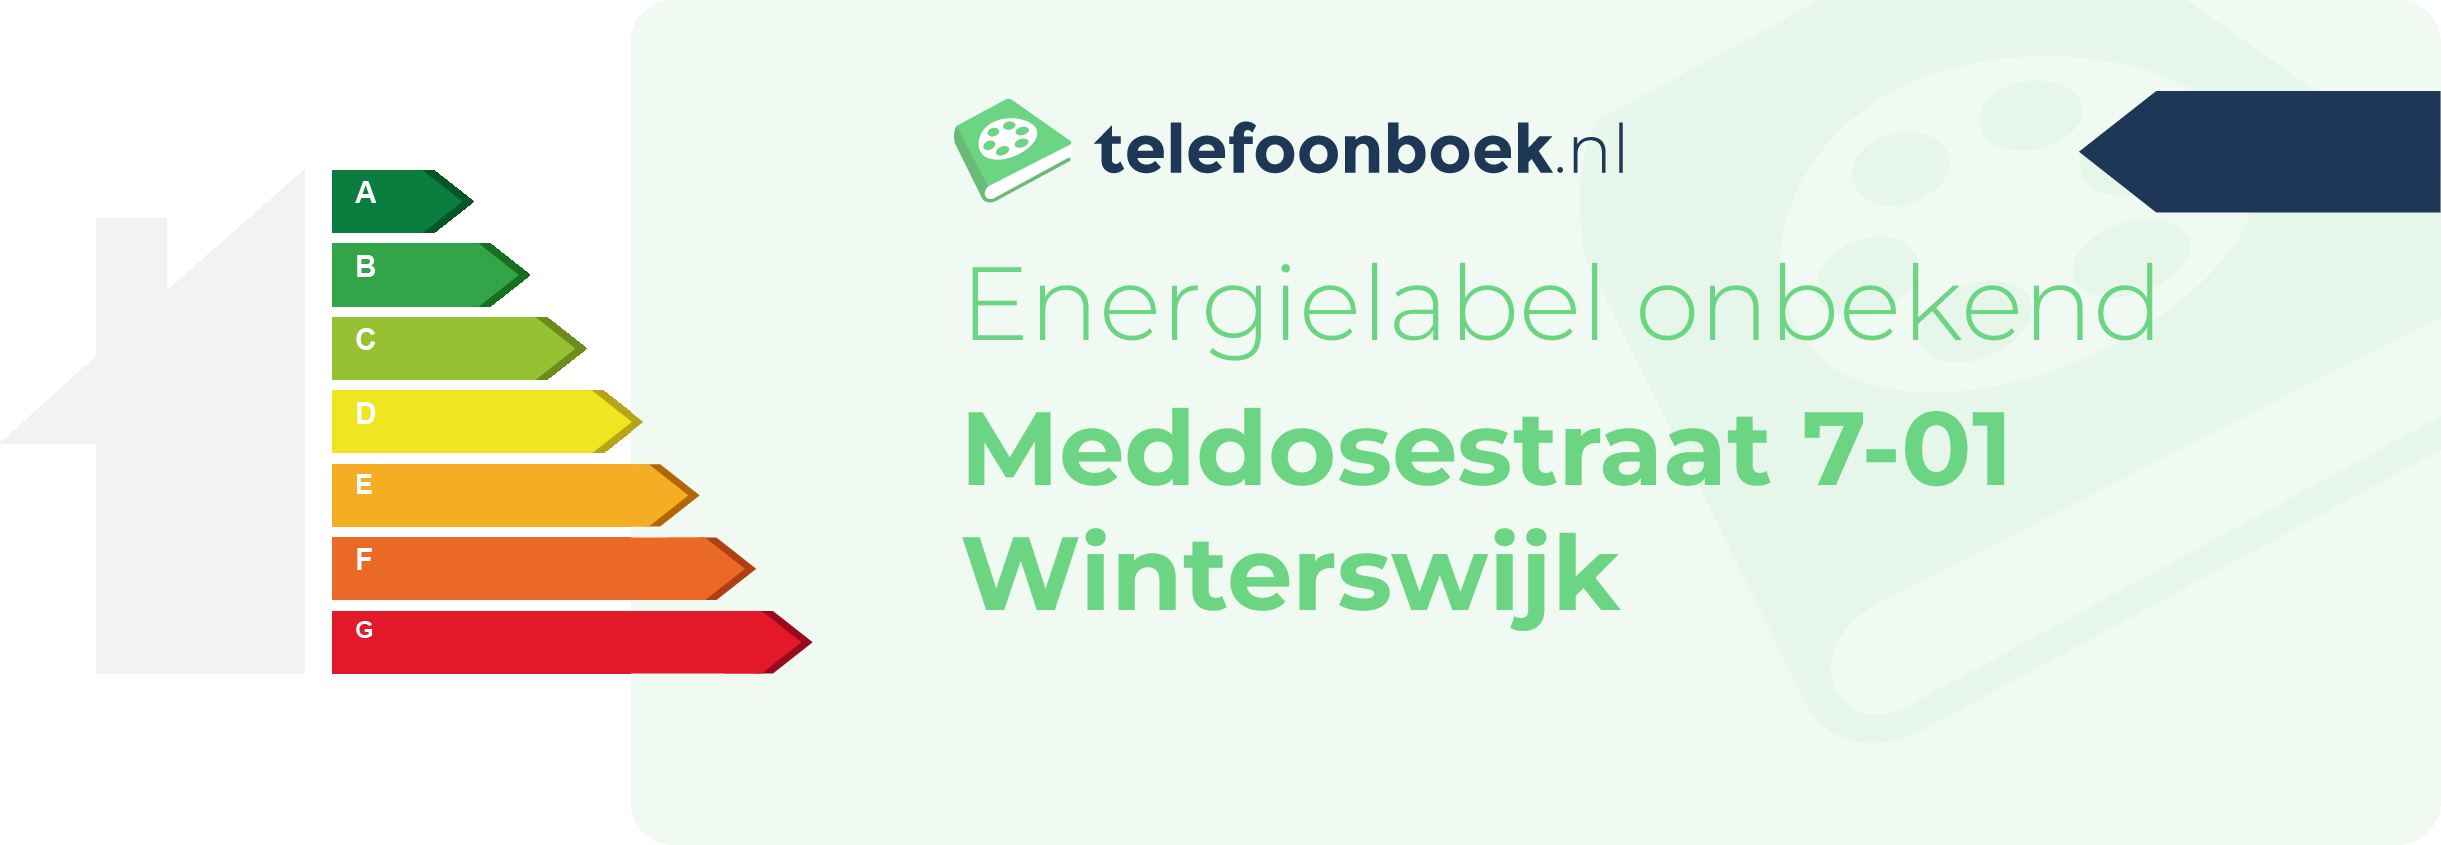 Energielabel Meddosestraat 7-01 Winterswijk